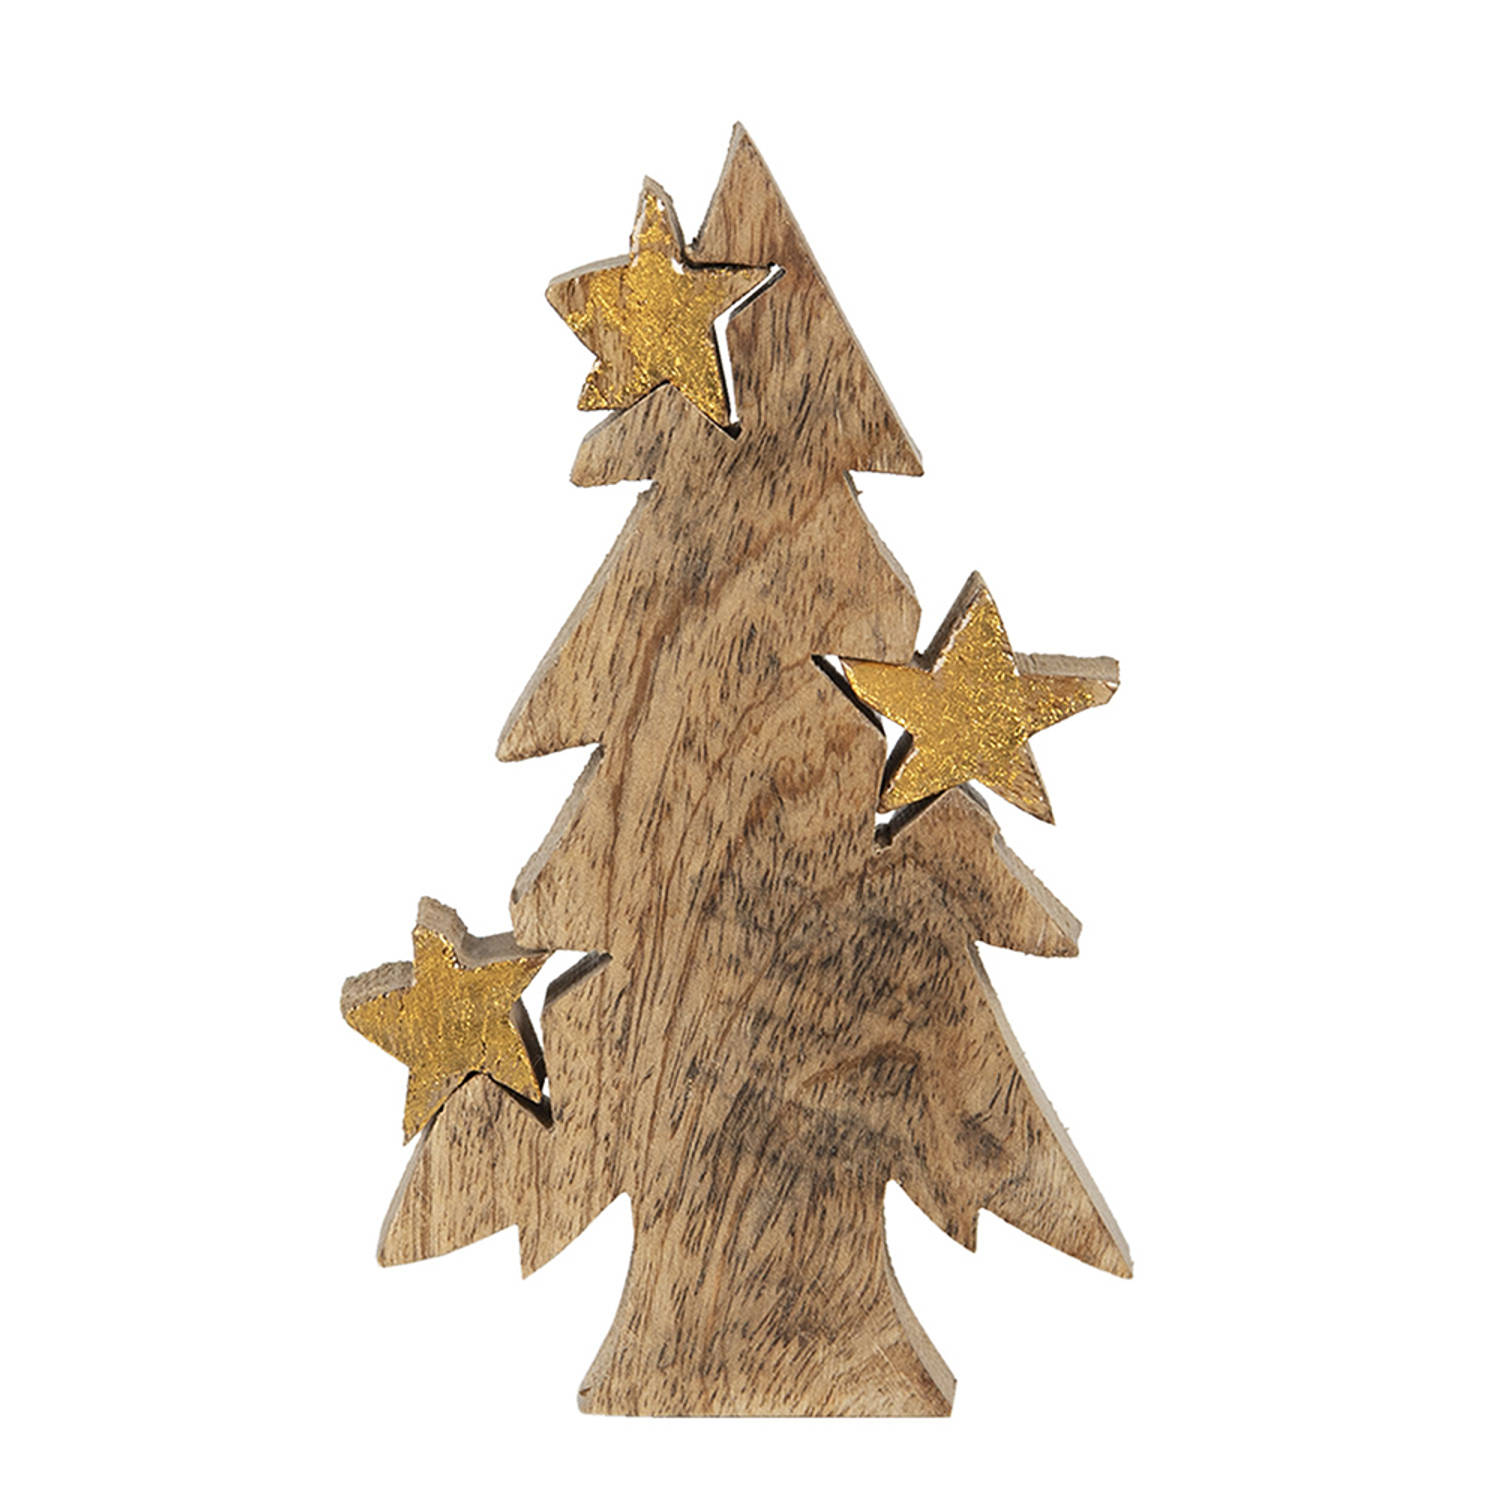 HAES DECO - Decoratieve Kerstboom - Formaat 10x3x16 cm - Kleur Bruin - Materiaal Hout - Kerstversiering, Kerstdecoratie